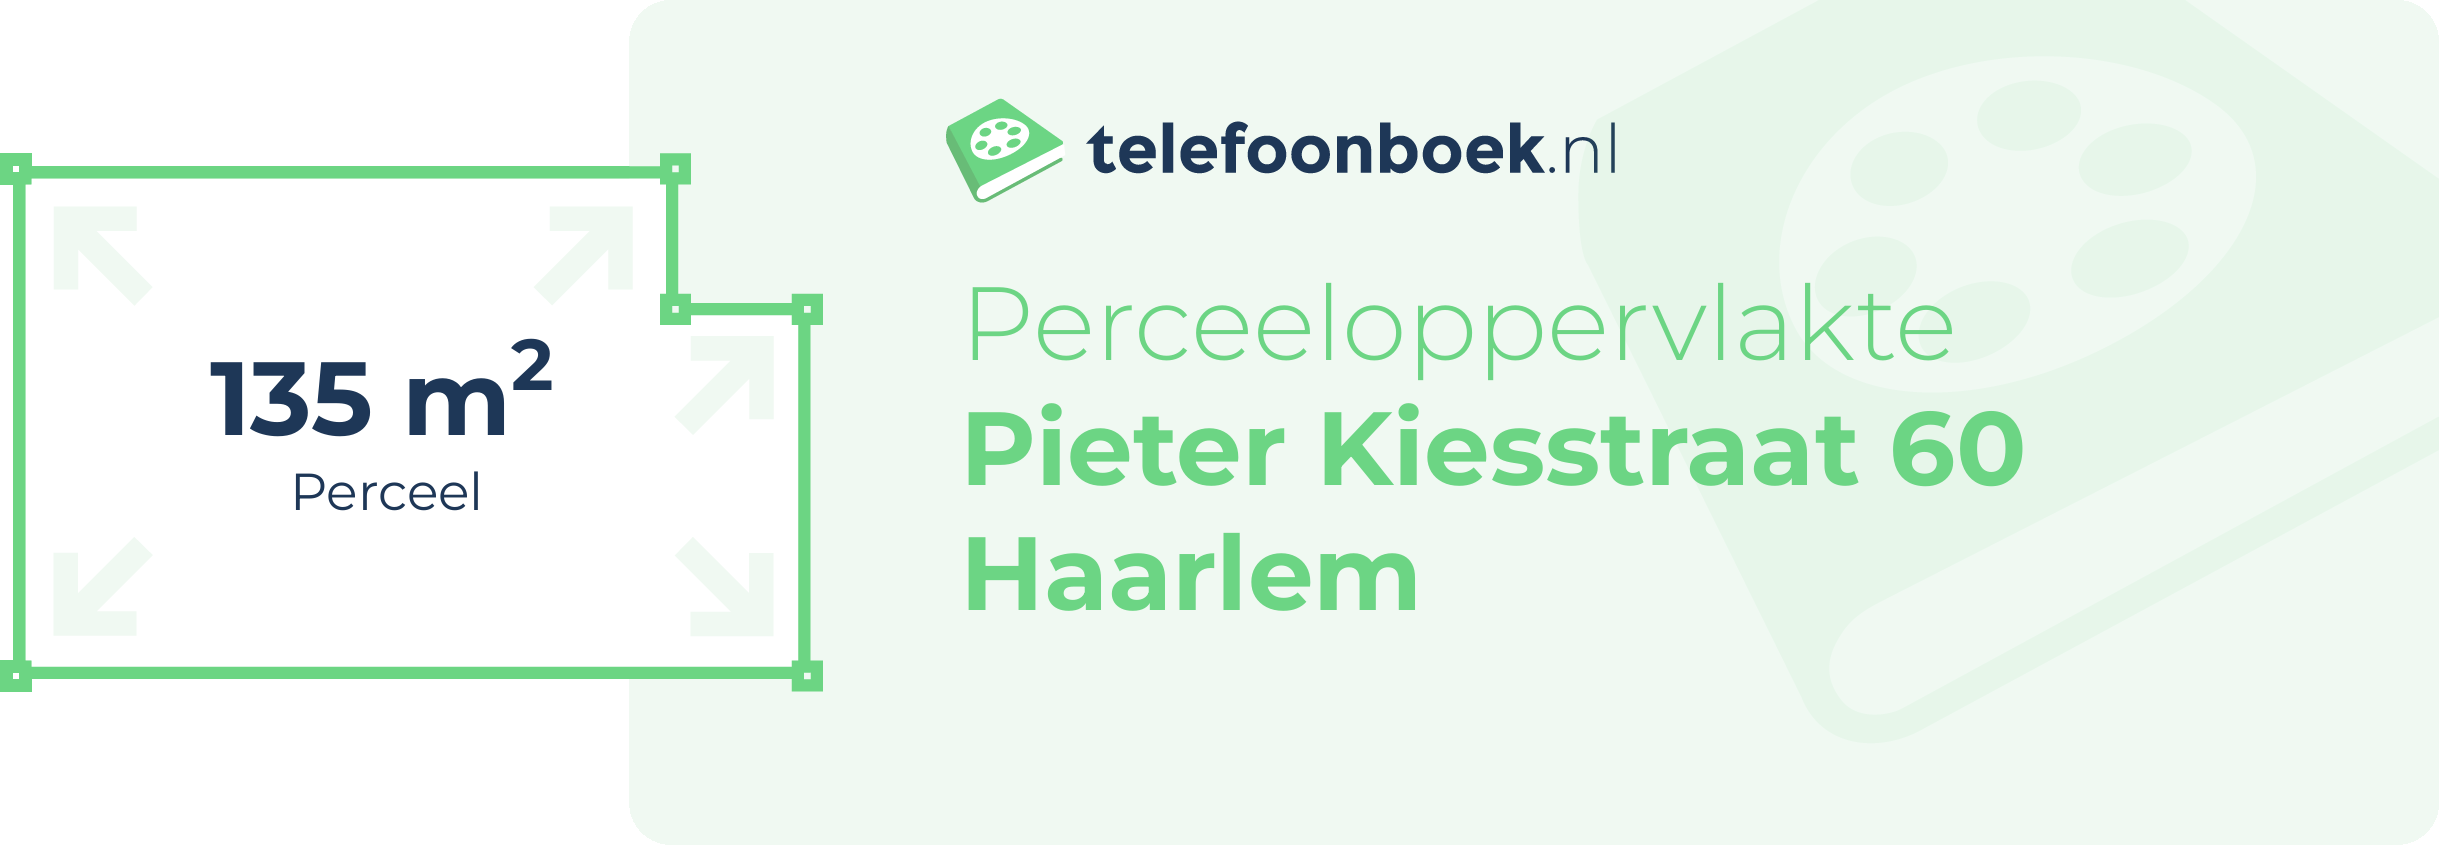 Perceeloppervlakte Pieter Kiesstraat 60 Haarlem